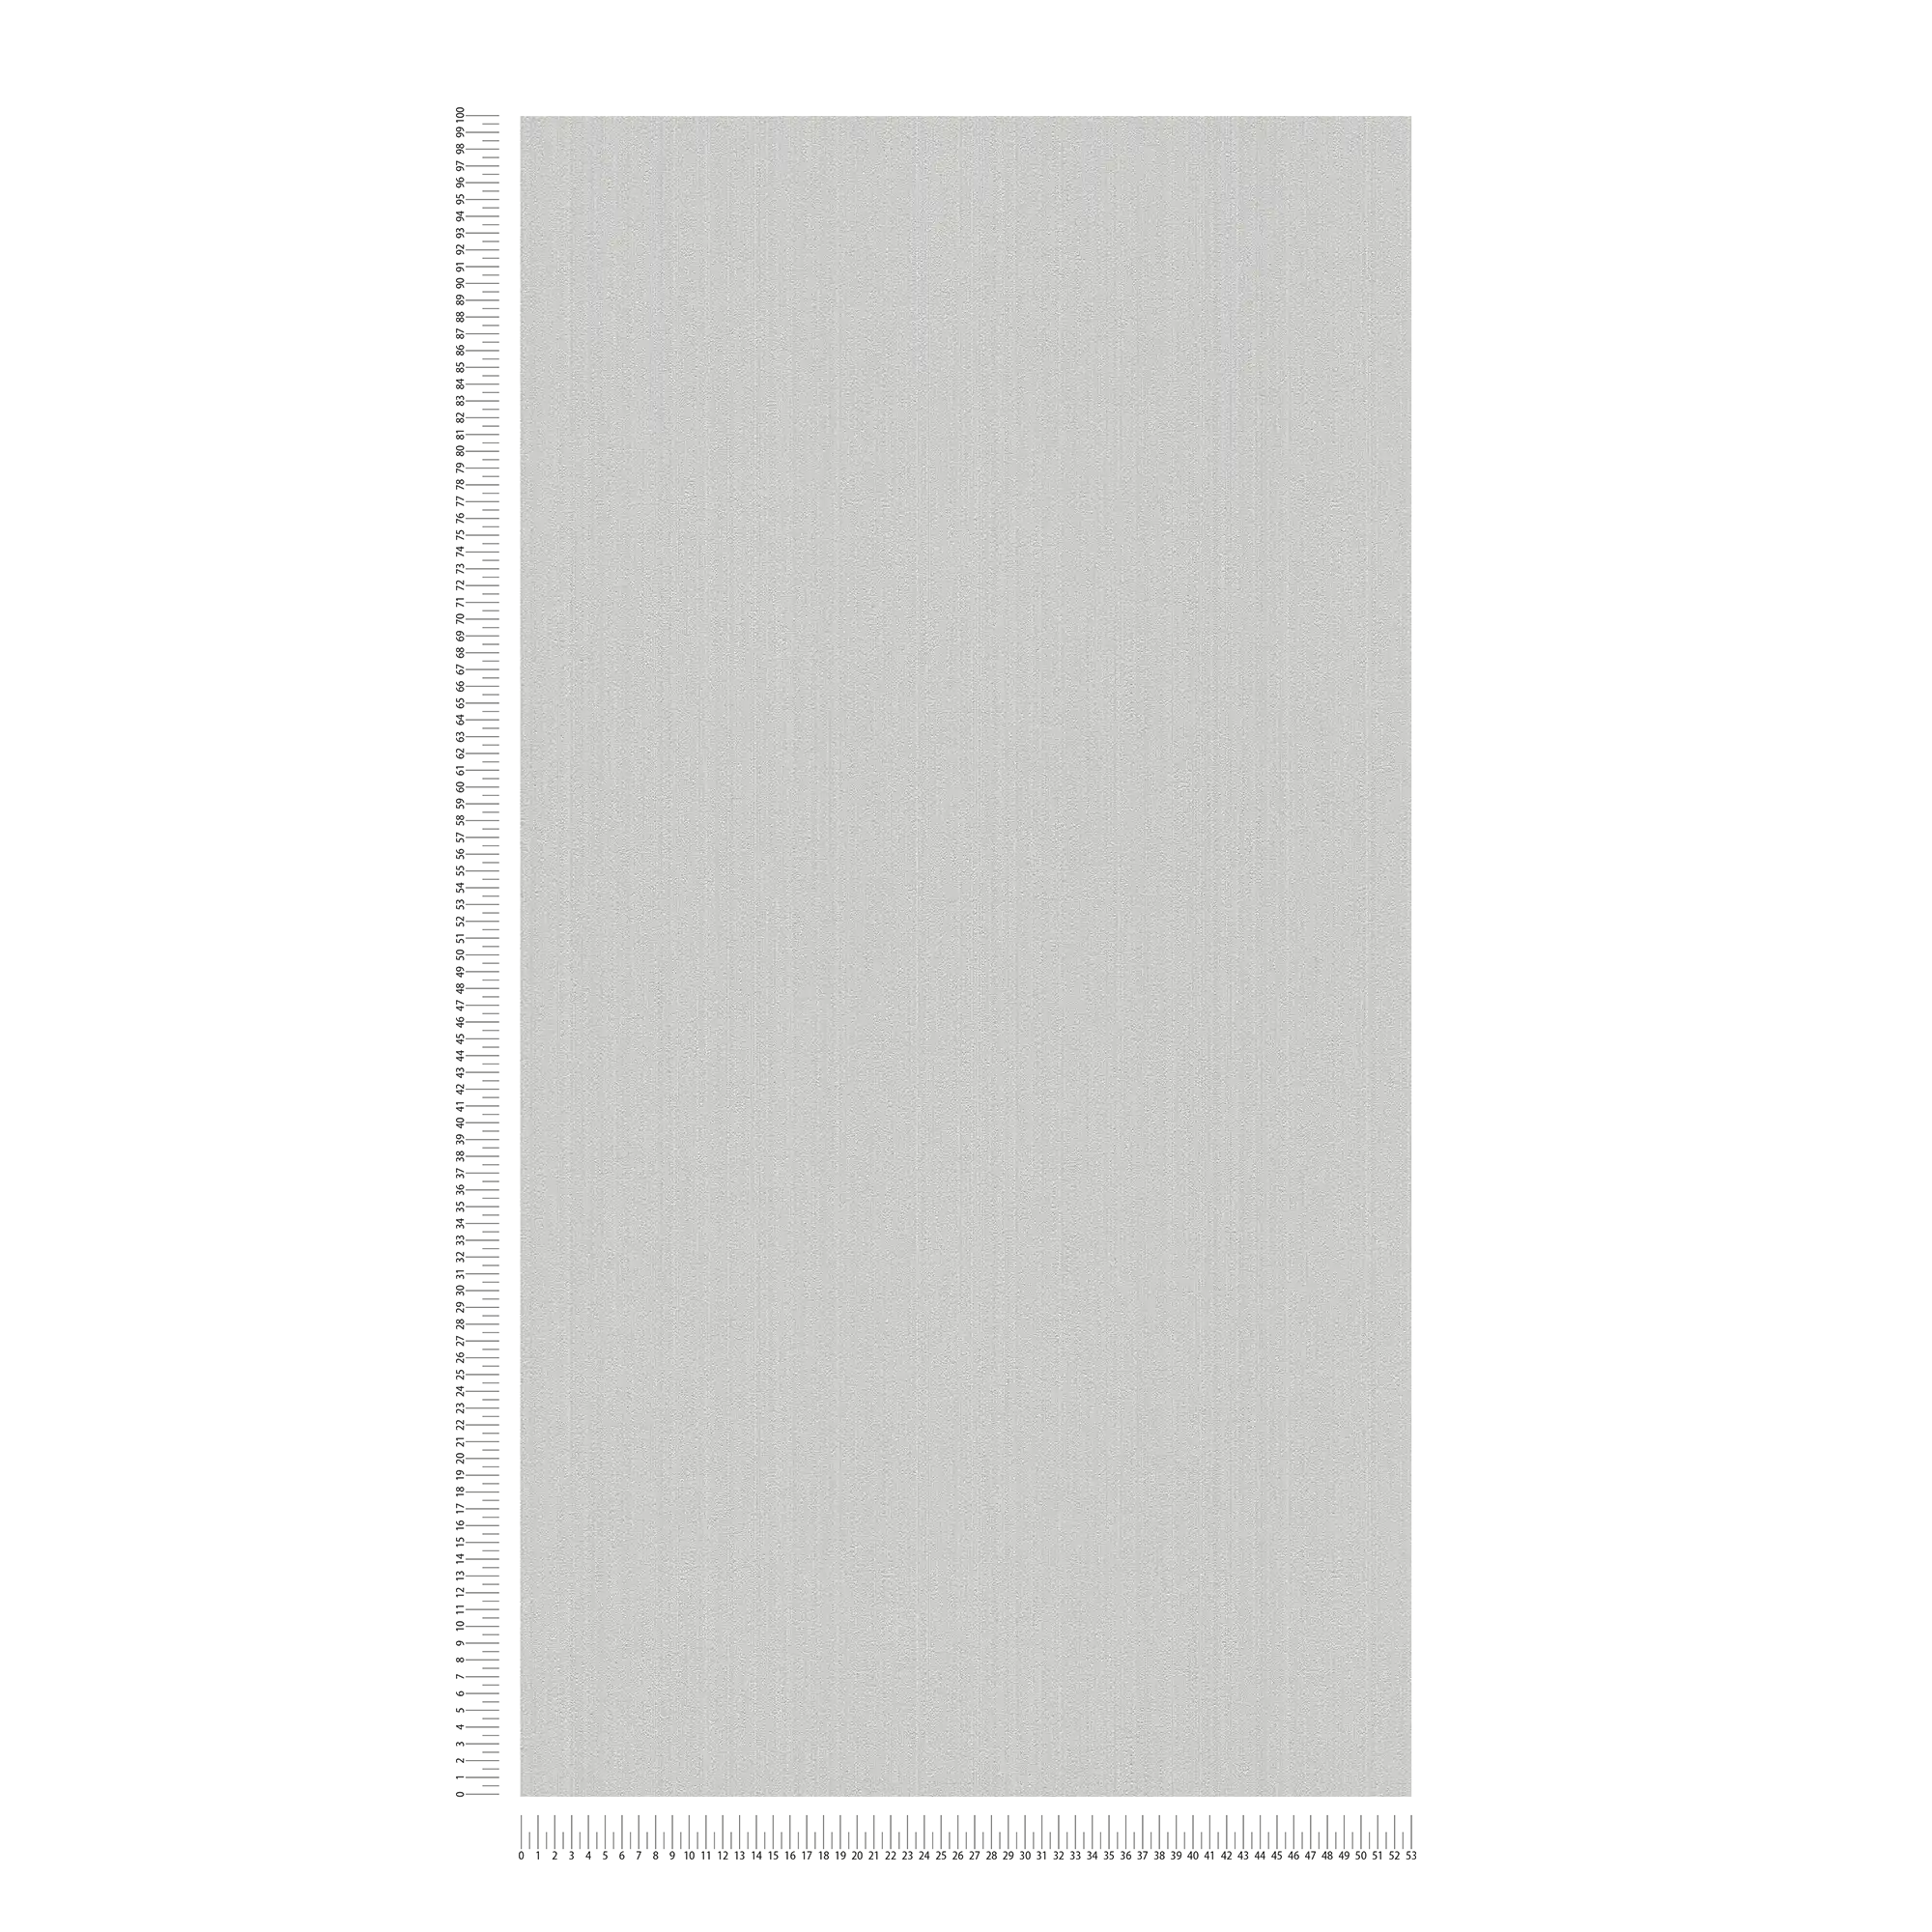             Papel pintado no tejido de color gris claro con motivo Sturkut, liso y seda mate
        